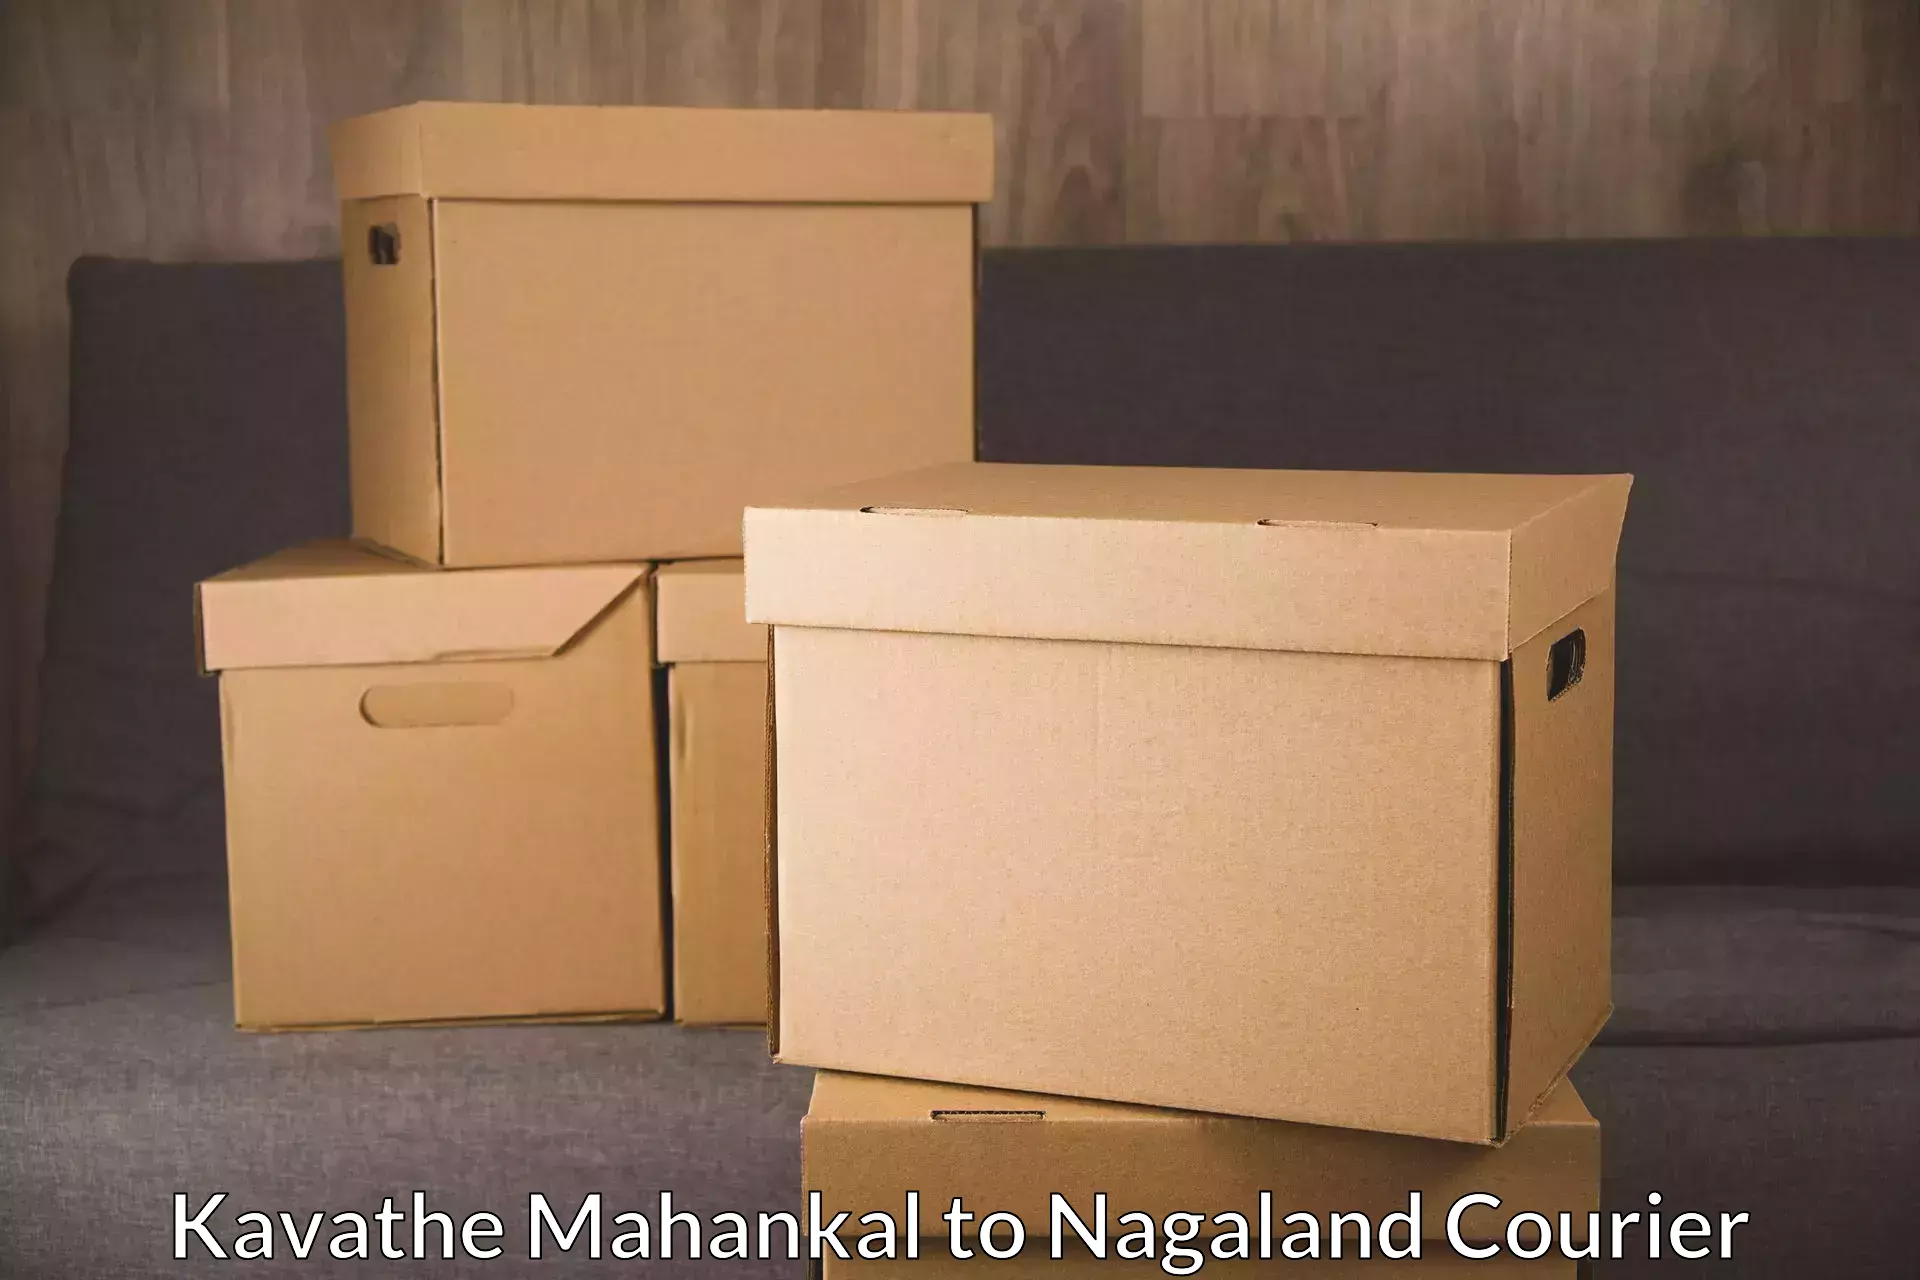 Express logistics providers Kavathe Mahankal to Kiphire